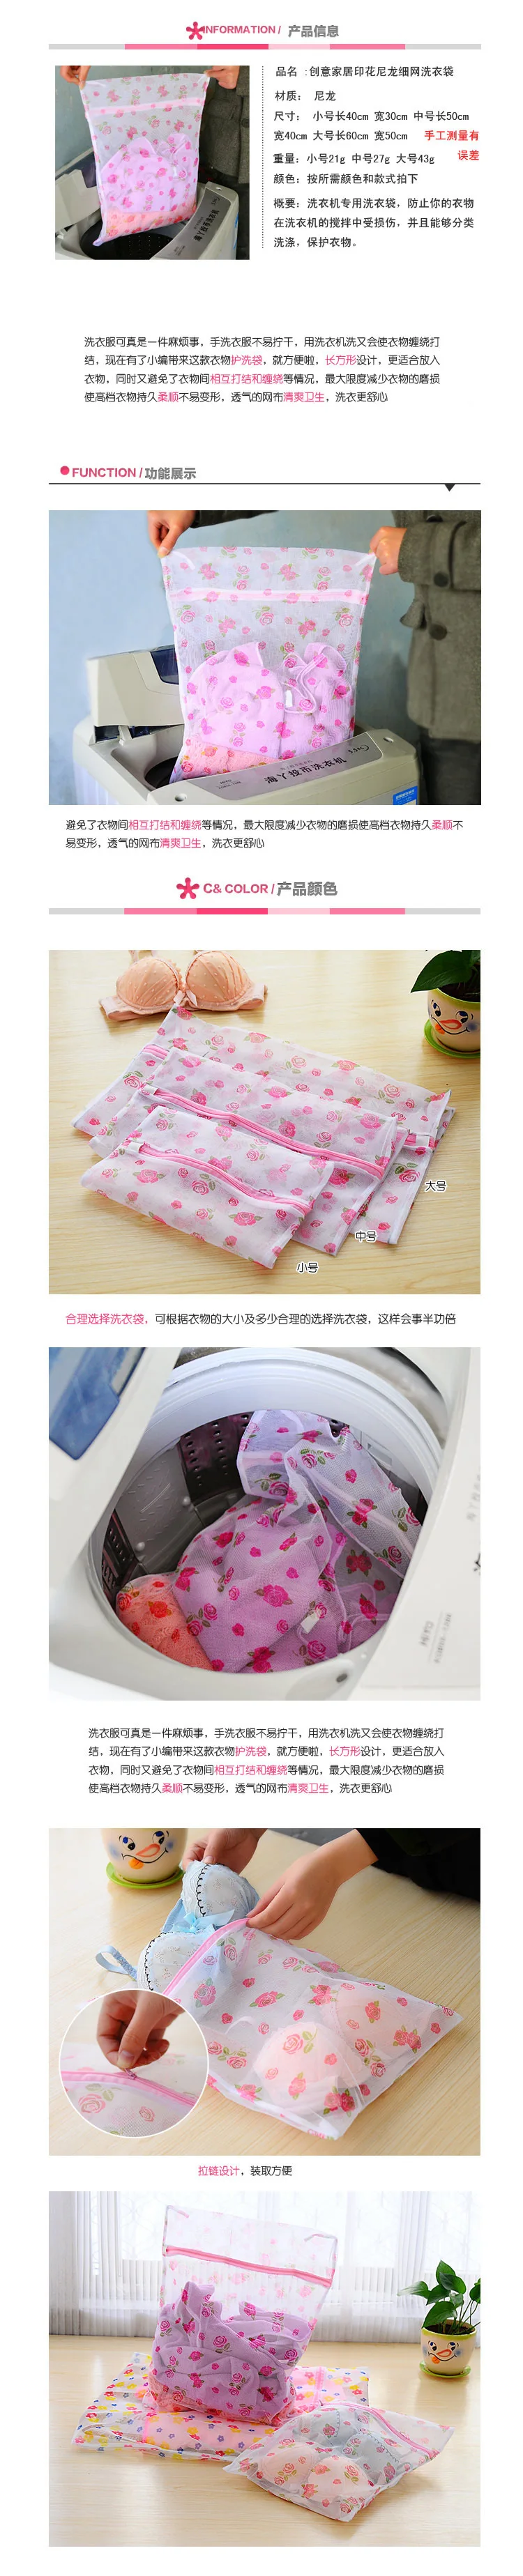 Бытовая Южная Корея качество печатных нейлон тонкой сетки сетка для стирки мешок бюстгальтер нижнее белье Защитная сумка для белья